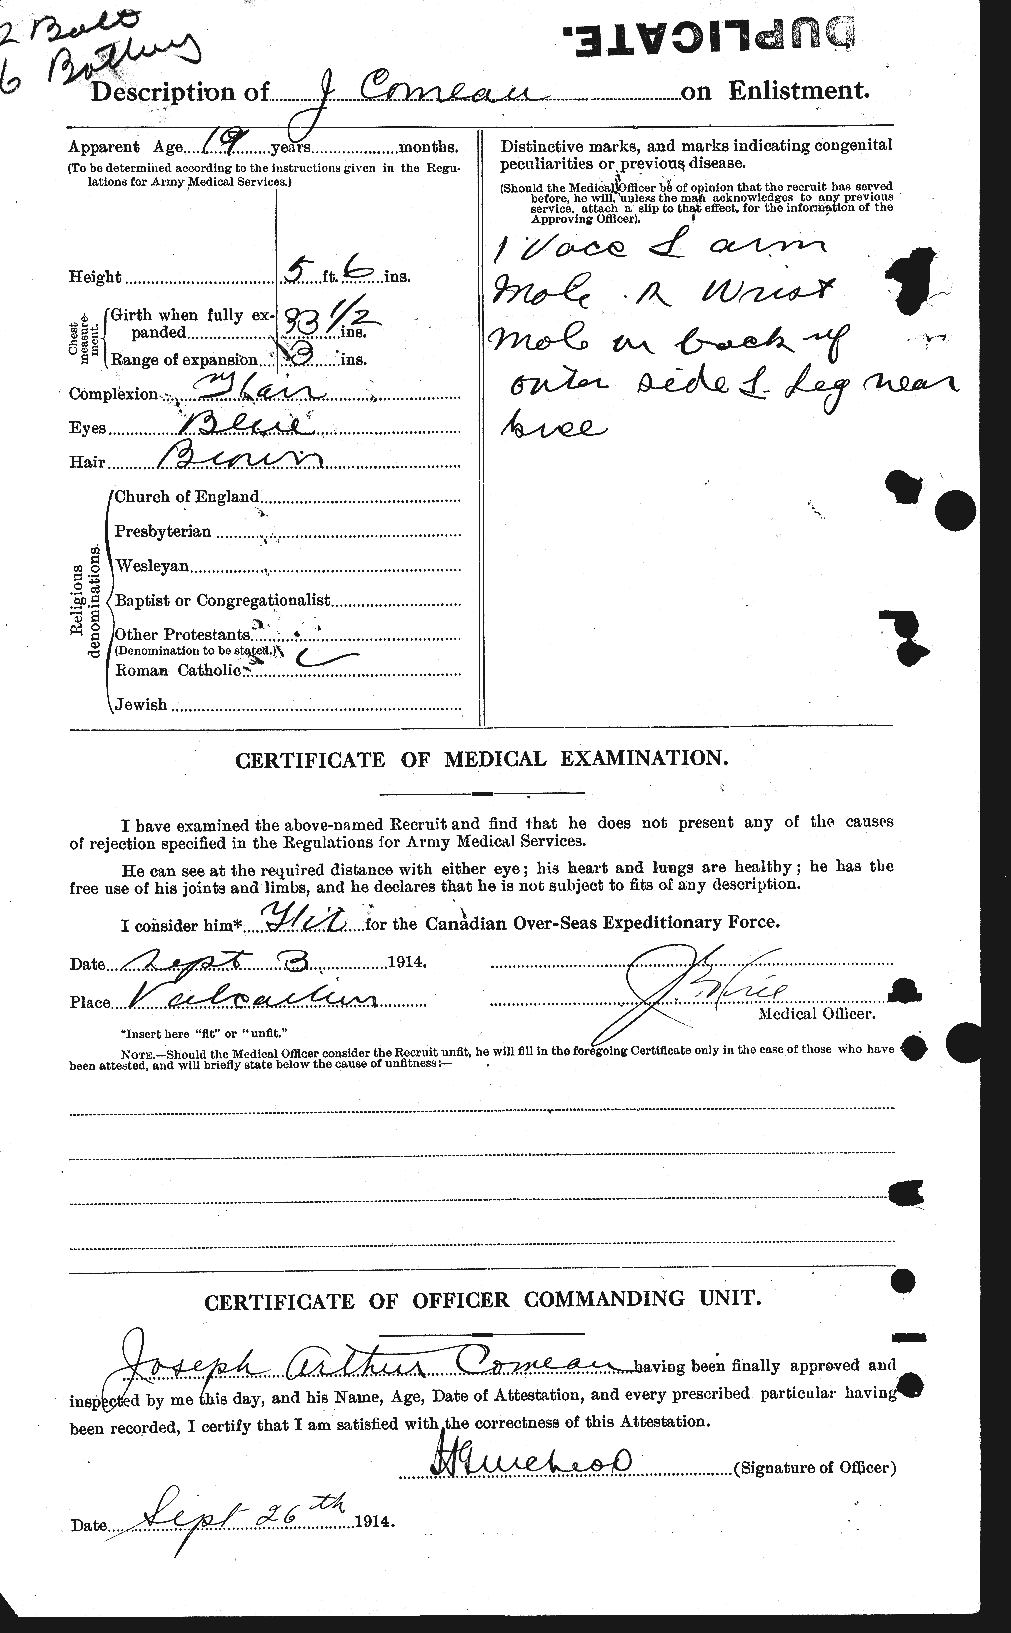 Dossiers du Personnel de la Première Guerre mondiale - CEC 069600b